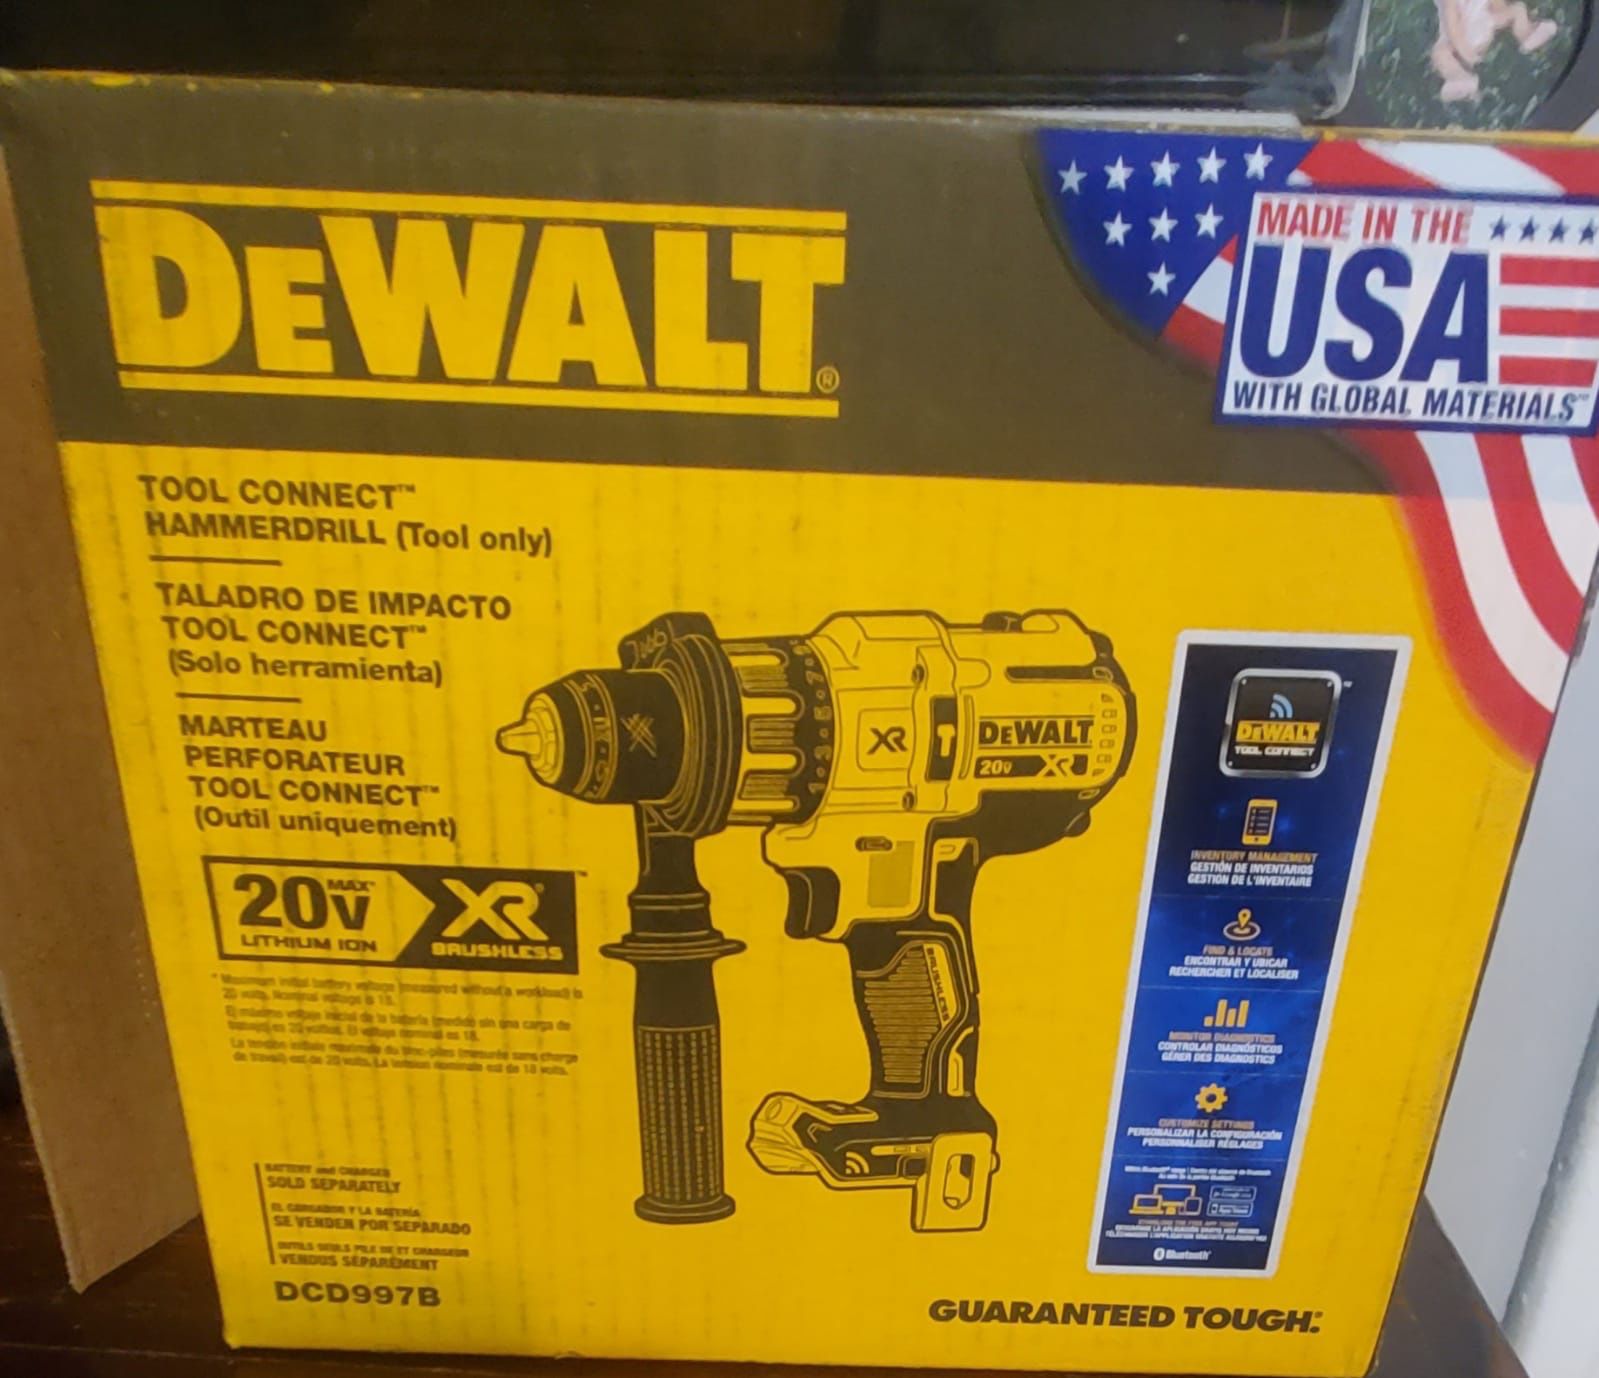 Dewalt hammer drill (tool only)